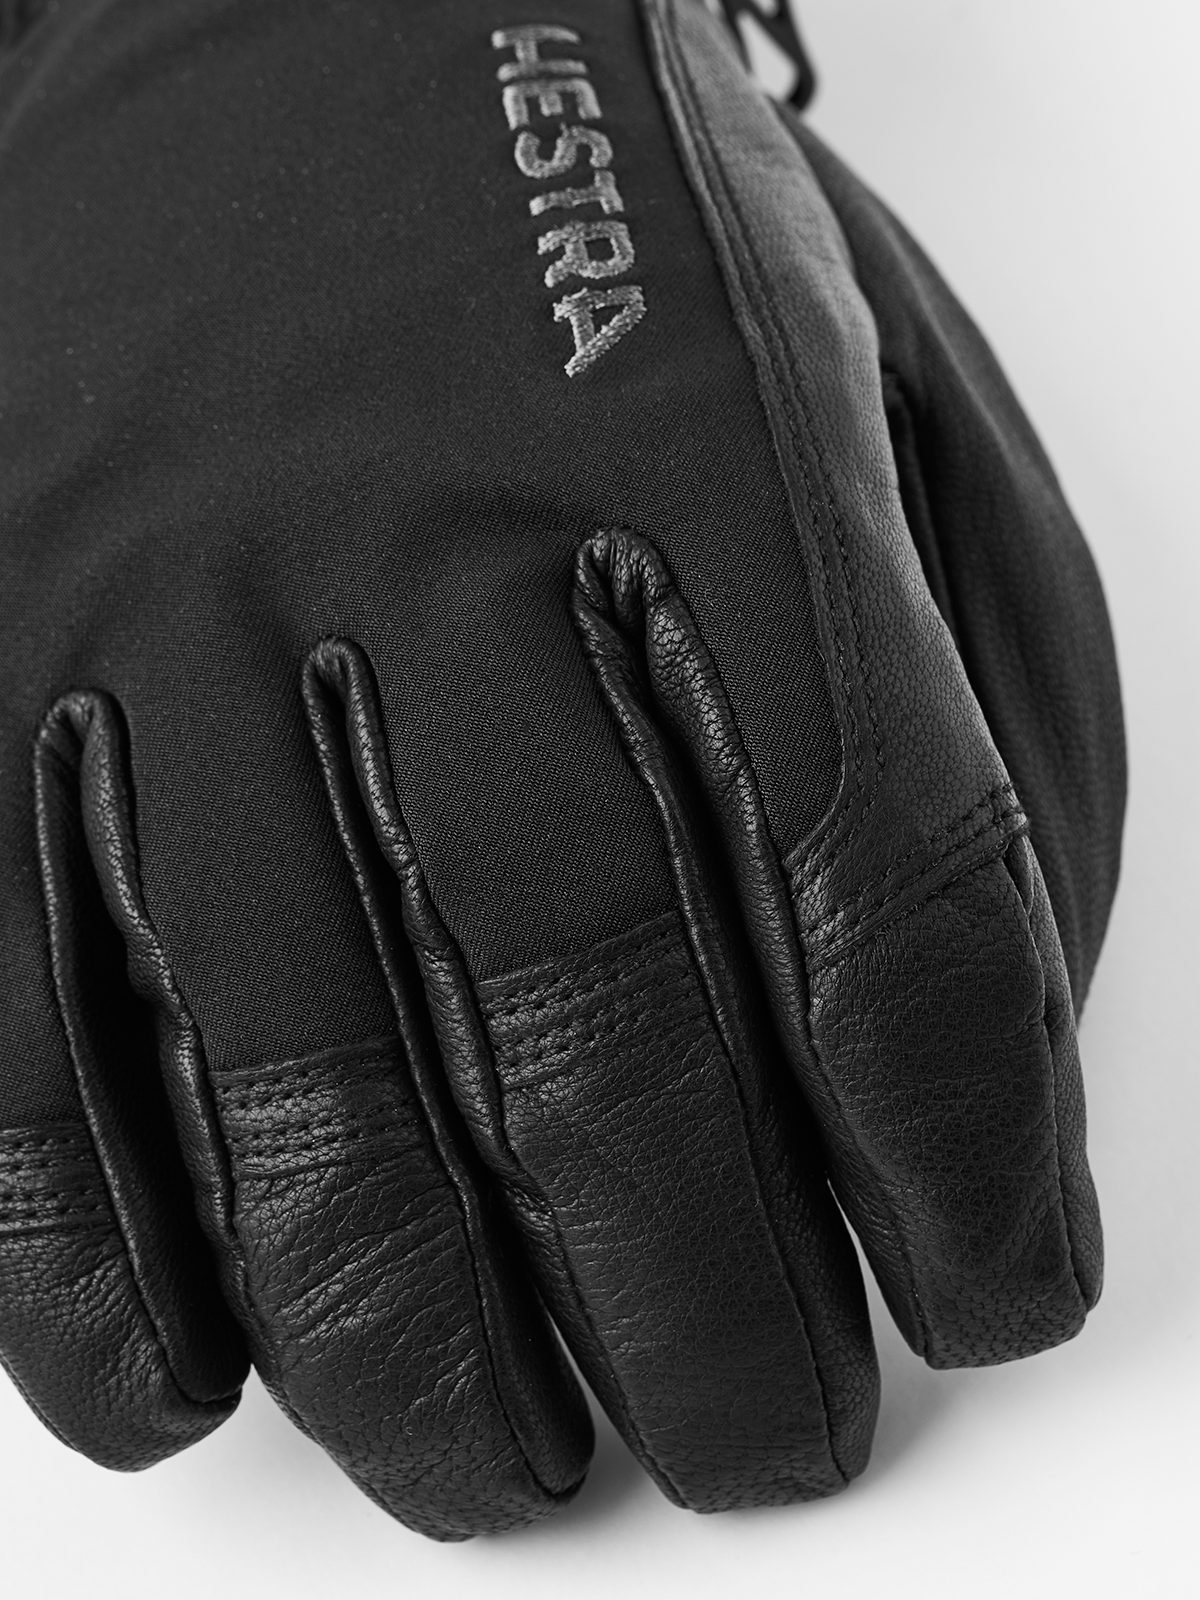 Hestra Army Leather Soft Shell Short 5-finger Skihandsker Herre | Tilbud: 722,50 - Indkøbsforening